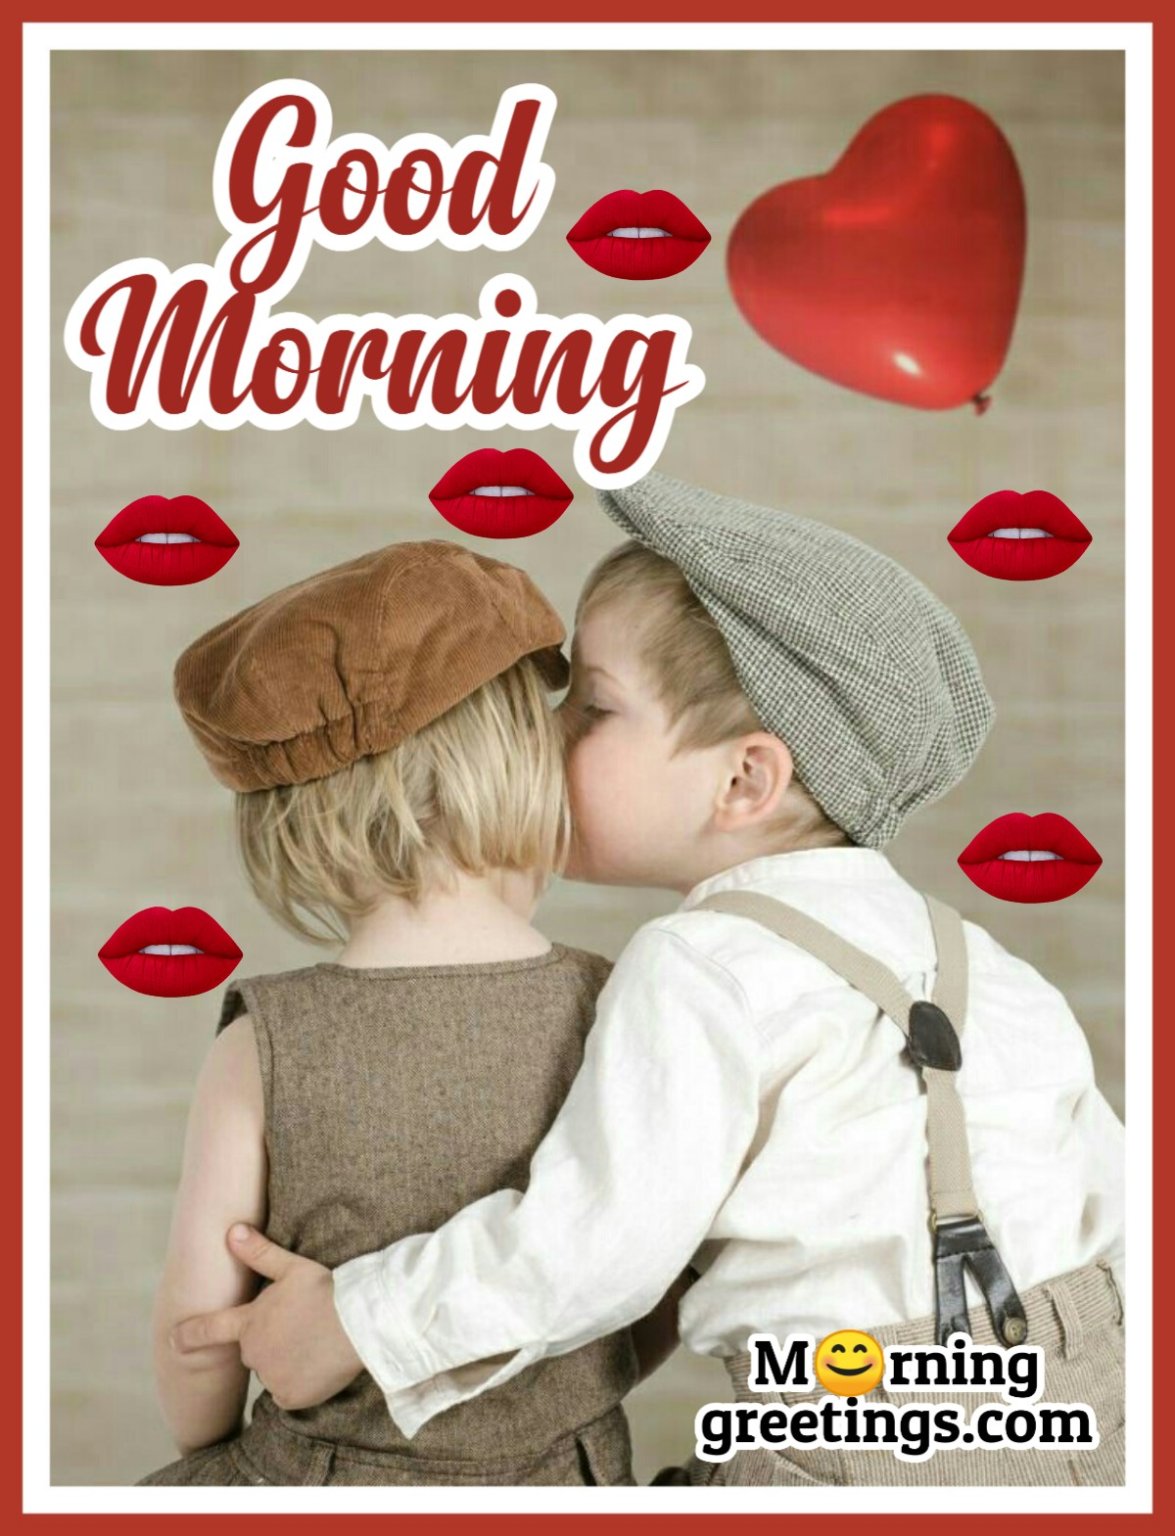 Good Morning Darling Kiss Images